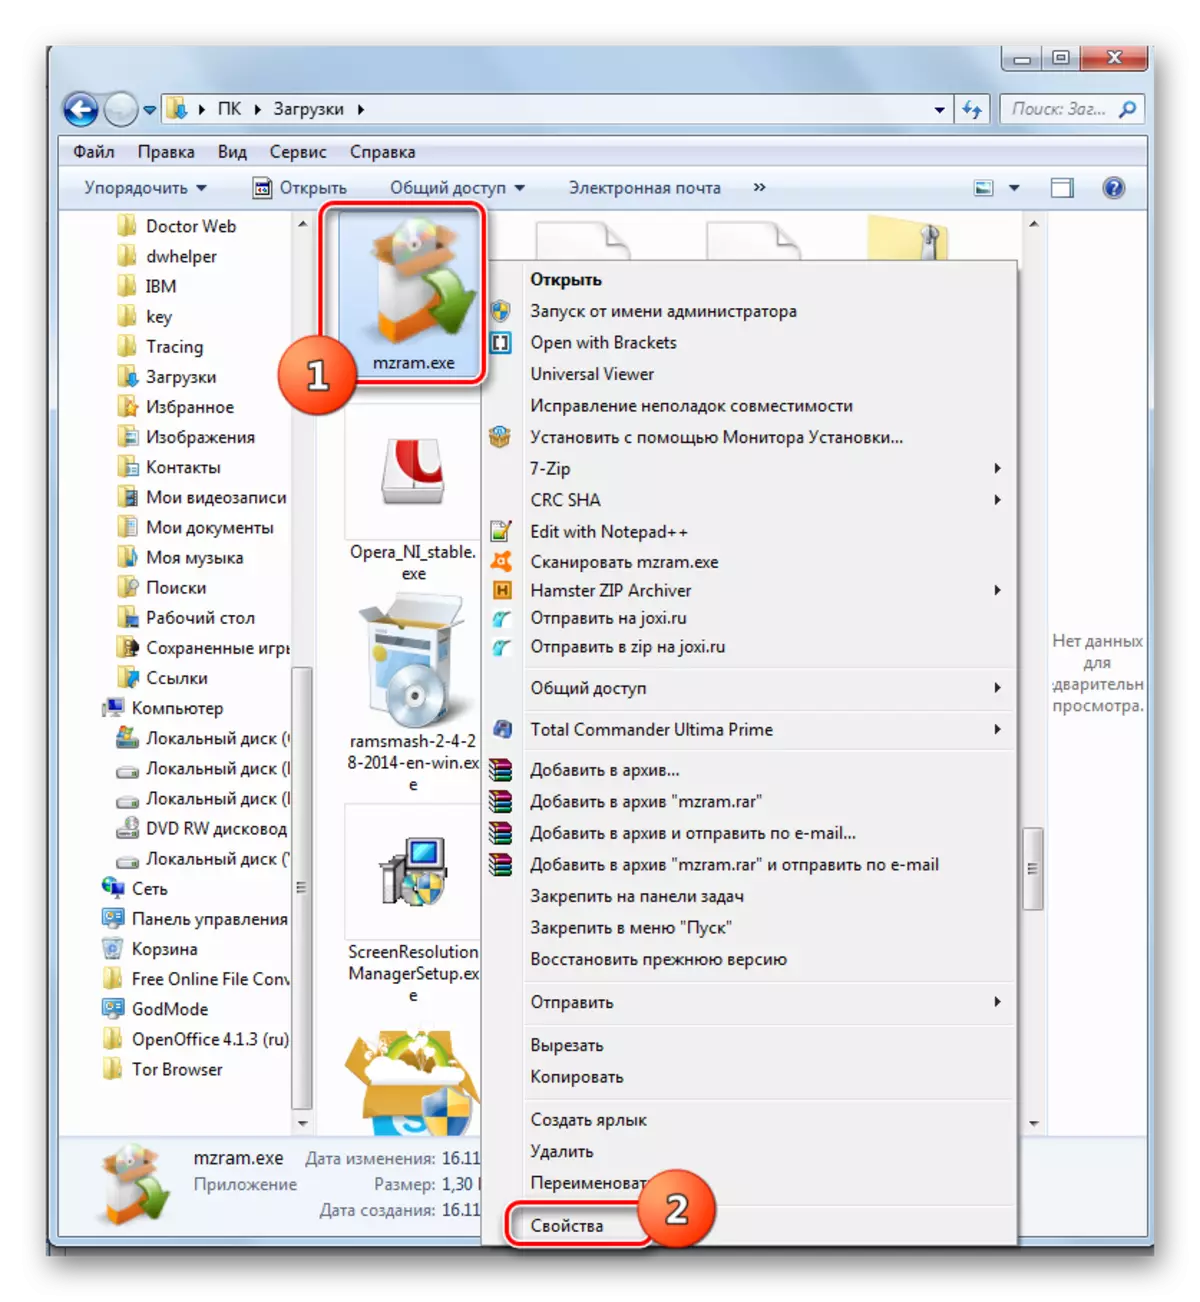 Pagbalhin sa Window sa Switch File Paagi sa Menu sa Konteksto sa Windows 7 conductor